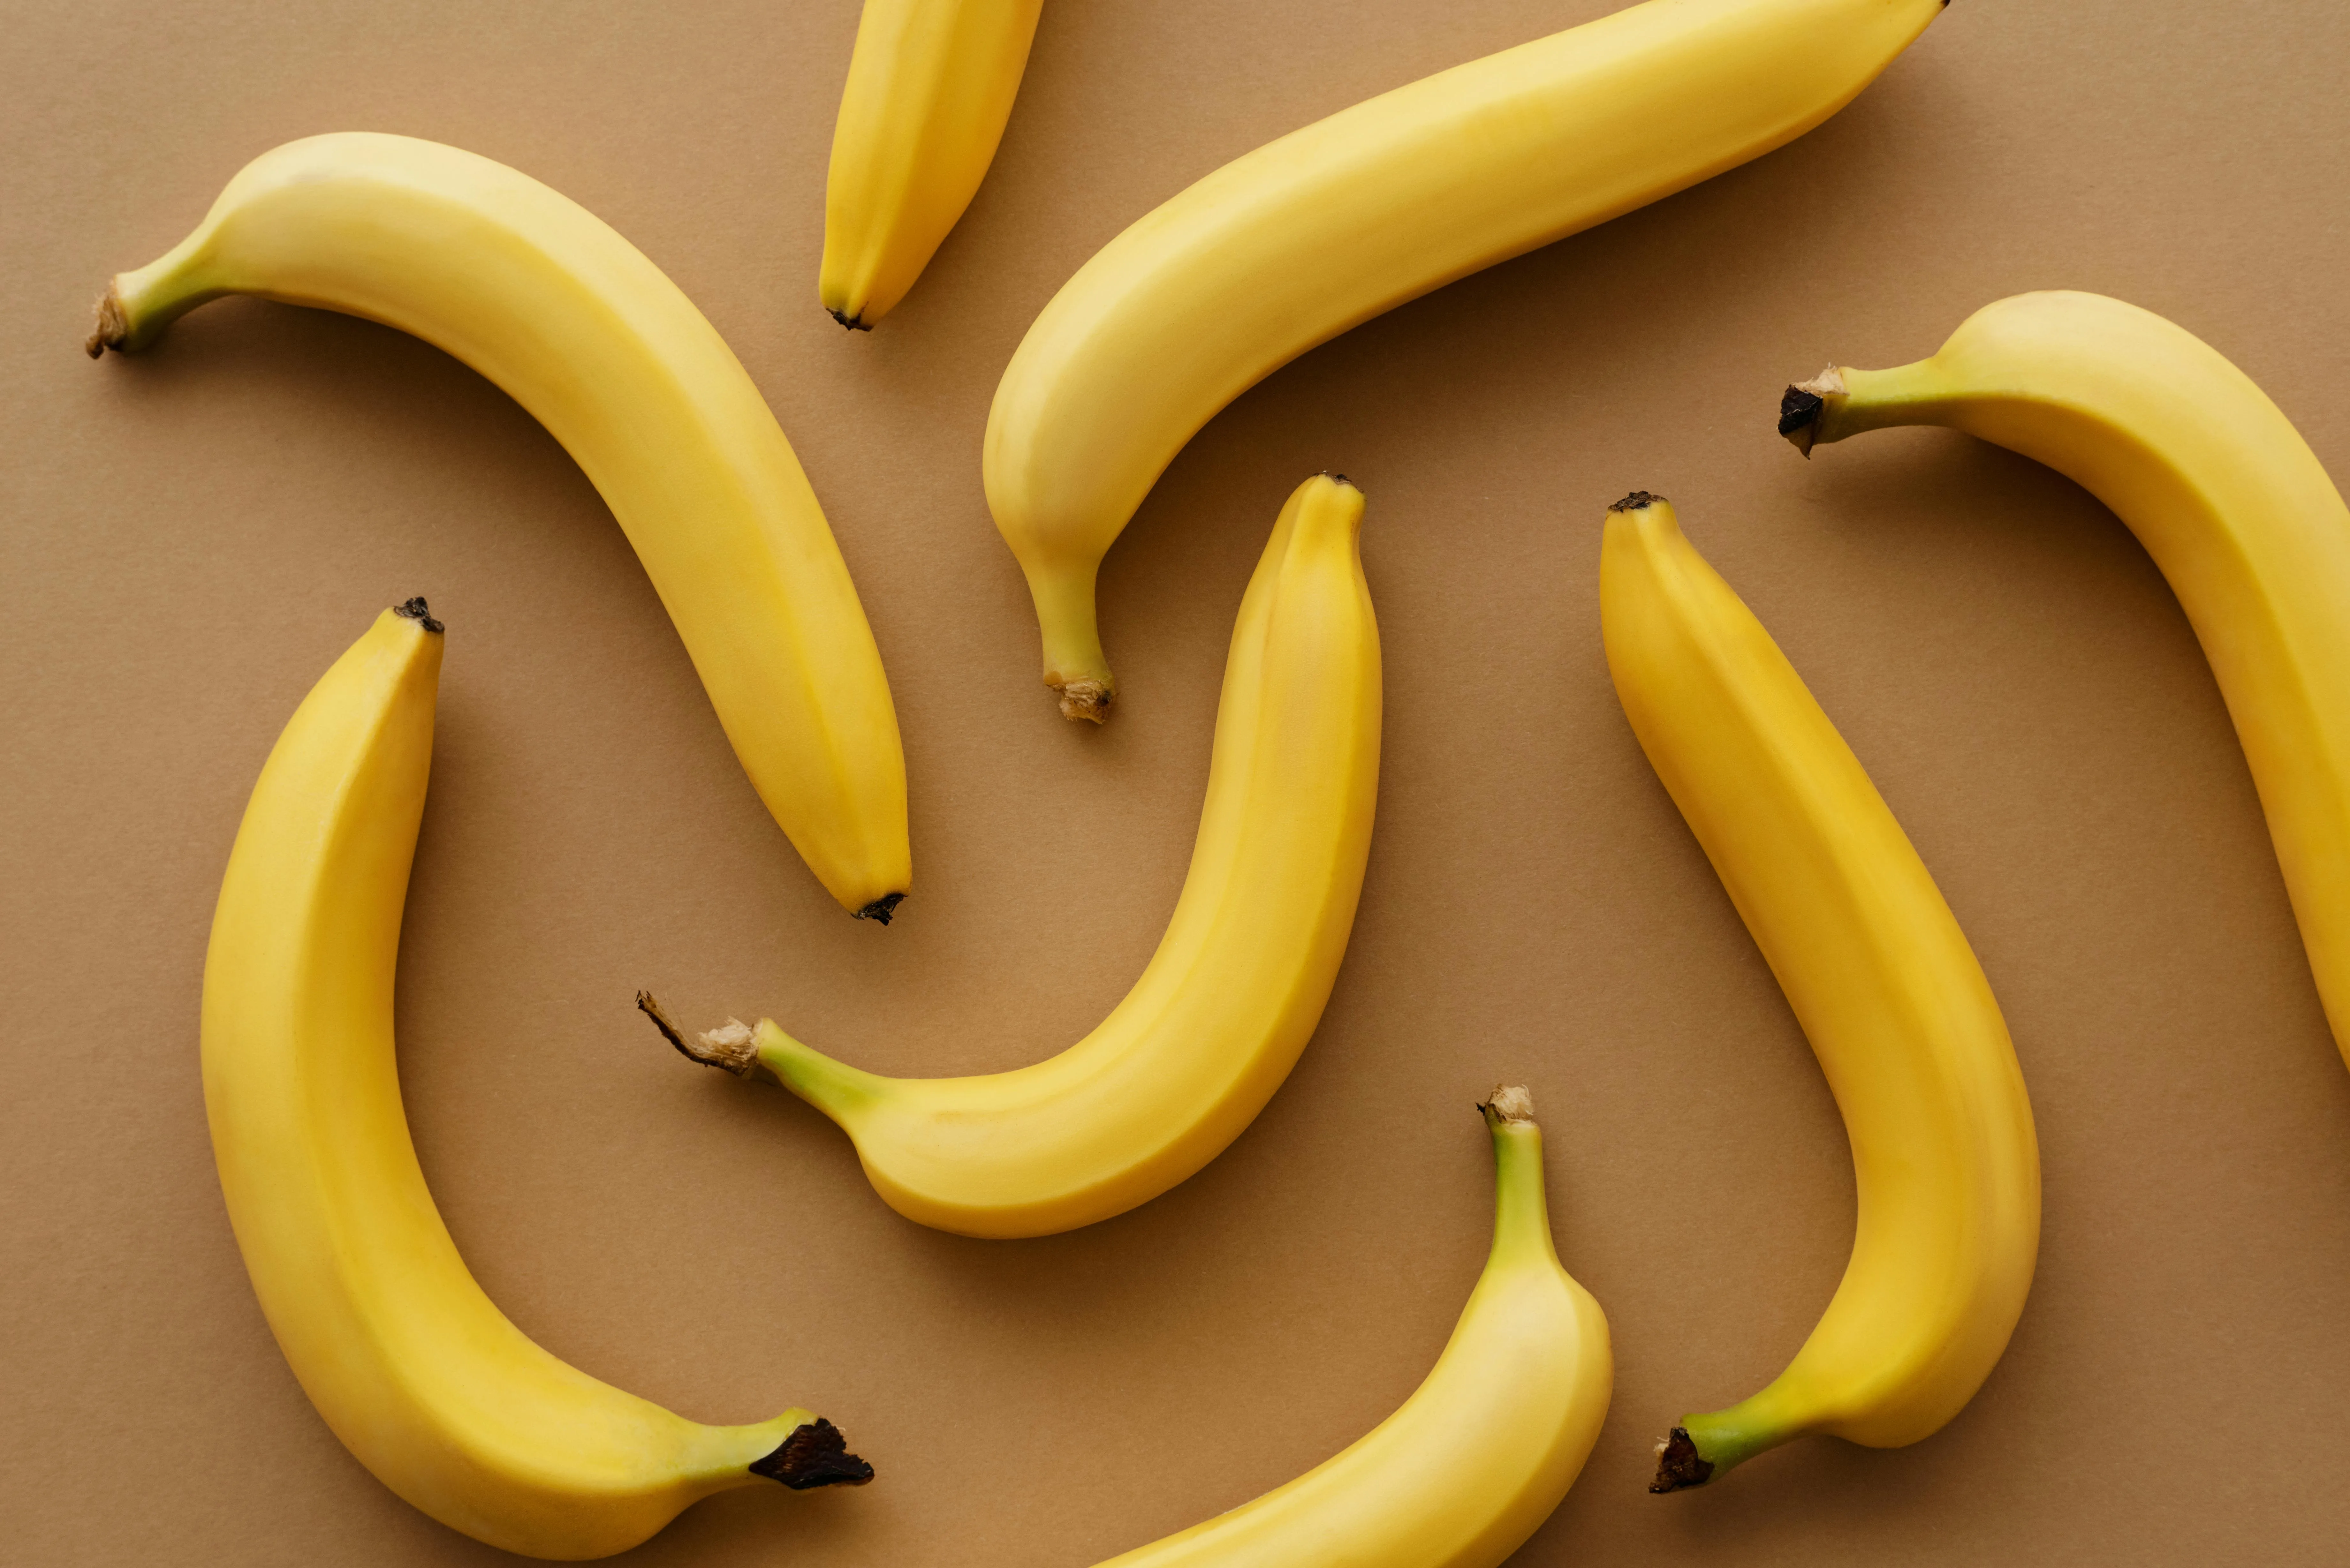 Щоб банан був свіжим, загорніть його у харчову плівку